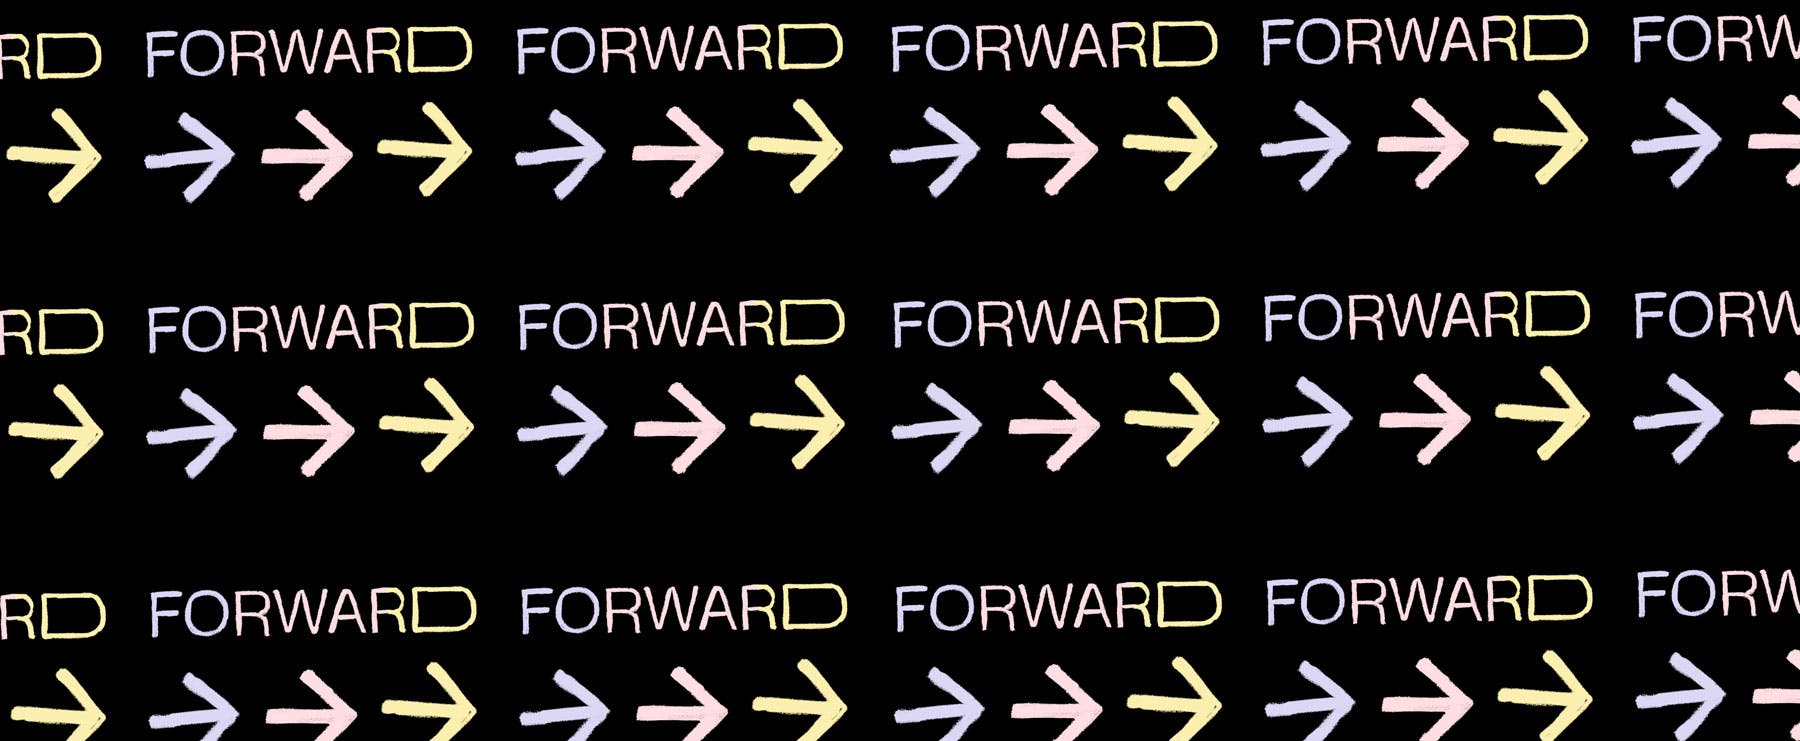 Forward, un encuentro digital impulsado por Pleo